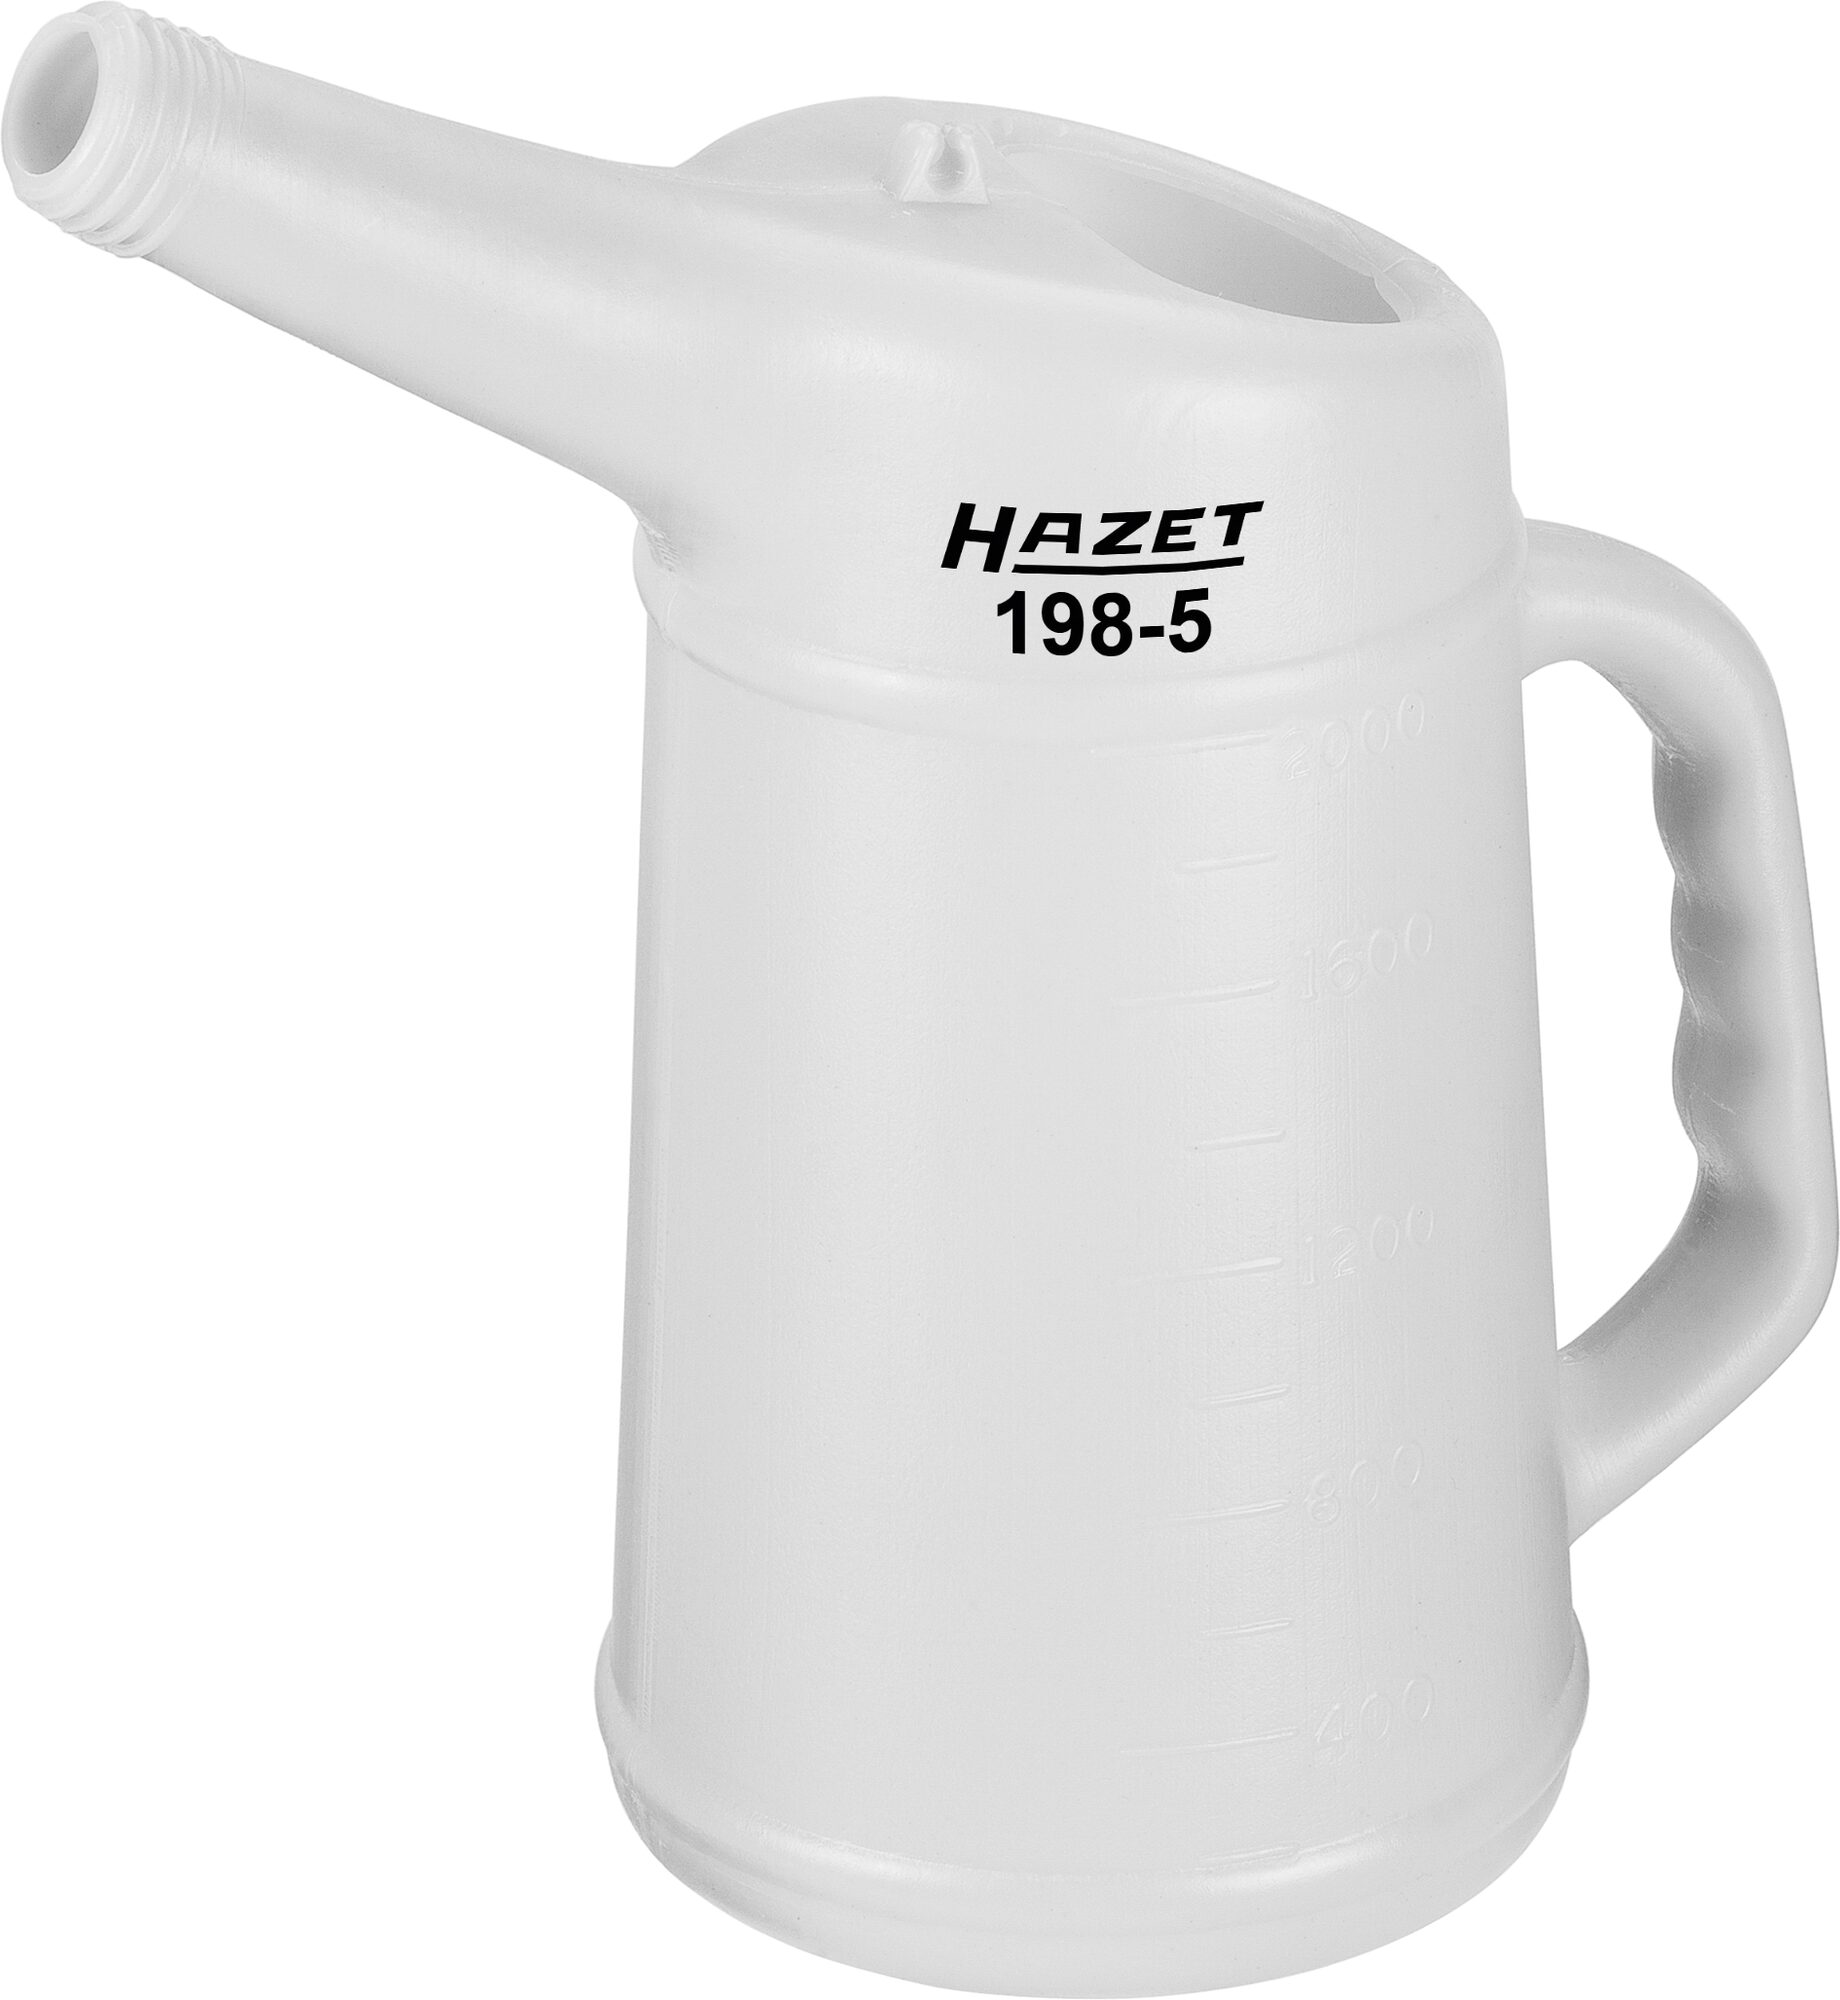 HAZET Mess-Becher 198-5